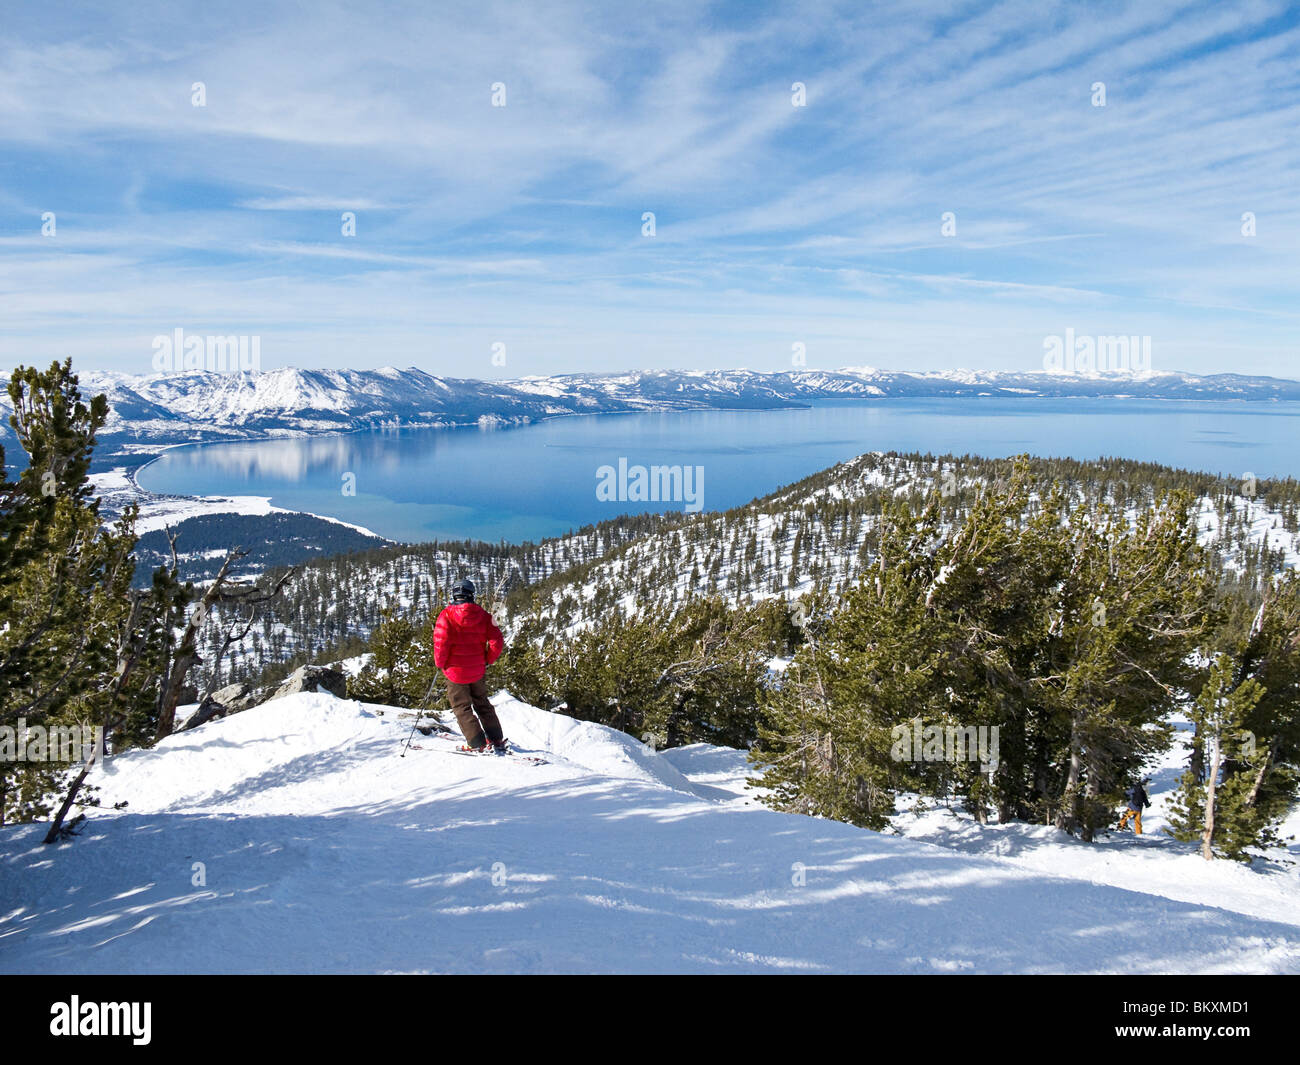 Vue de la skieuse admire Lake Tahoe à partir de la pente de ski de Heavenly Mountain Resort, USA. L'hiver Banque D'Images